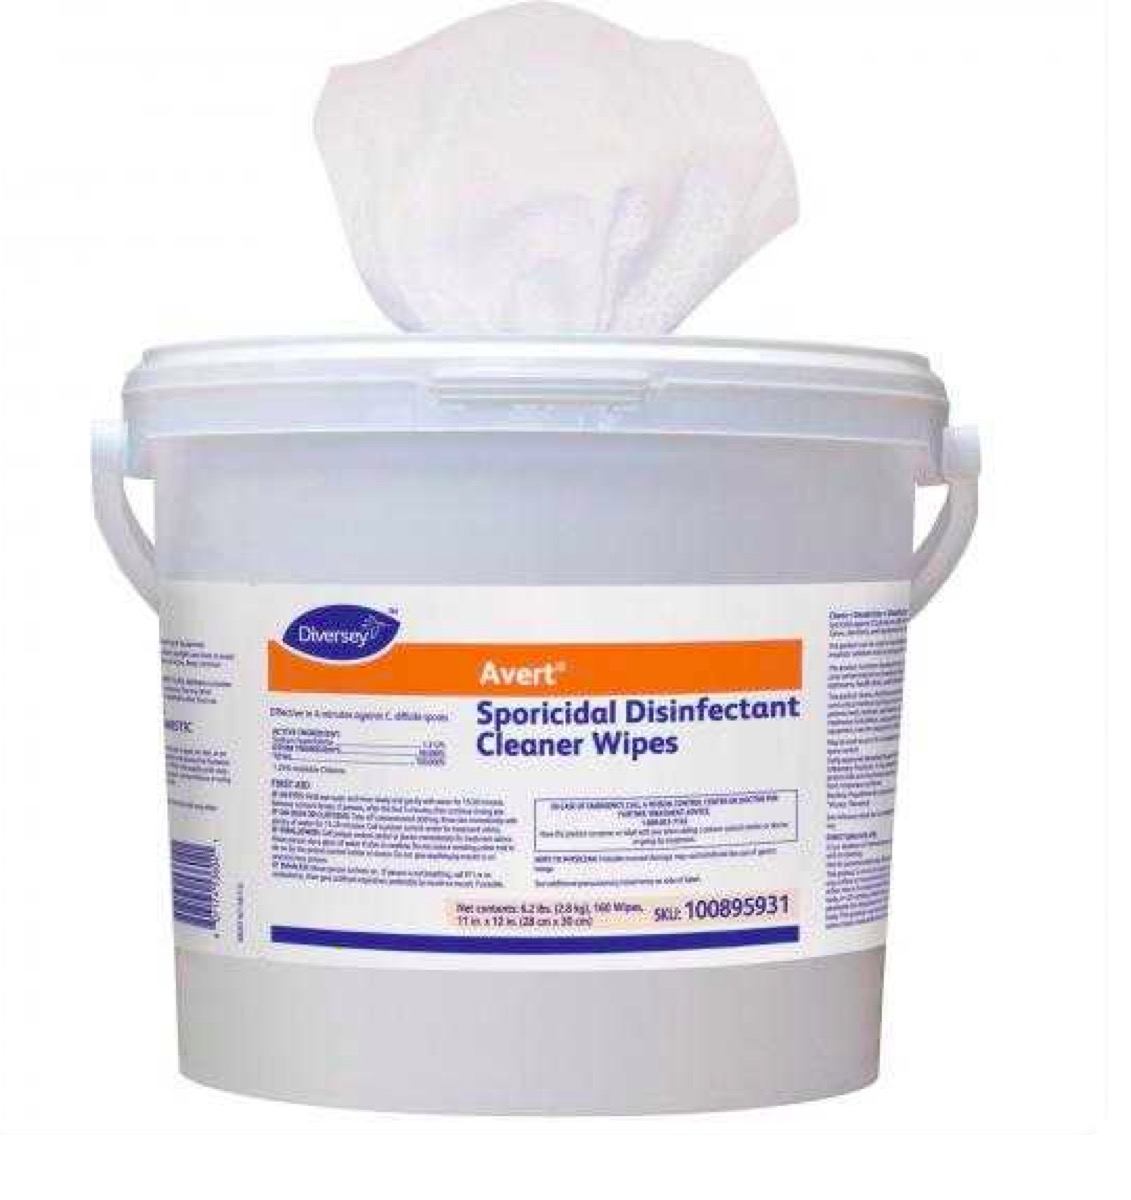 Avert® Sporicidal Disinfectant Cleaner Wipes